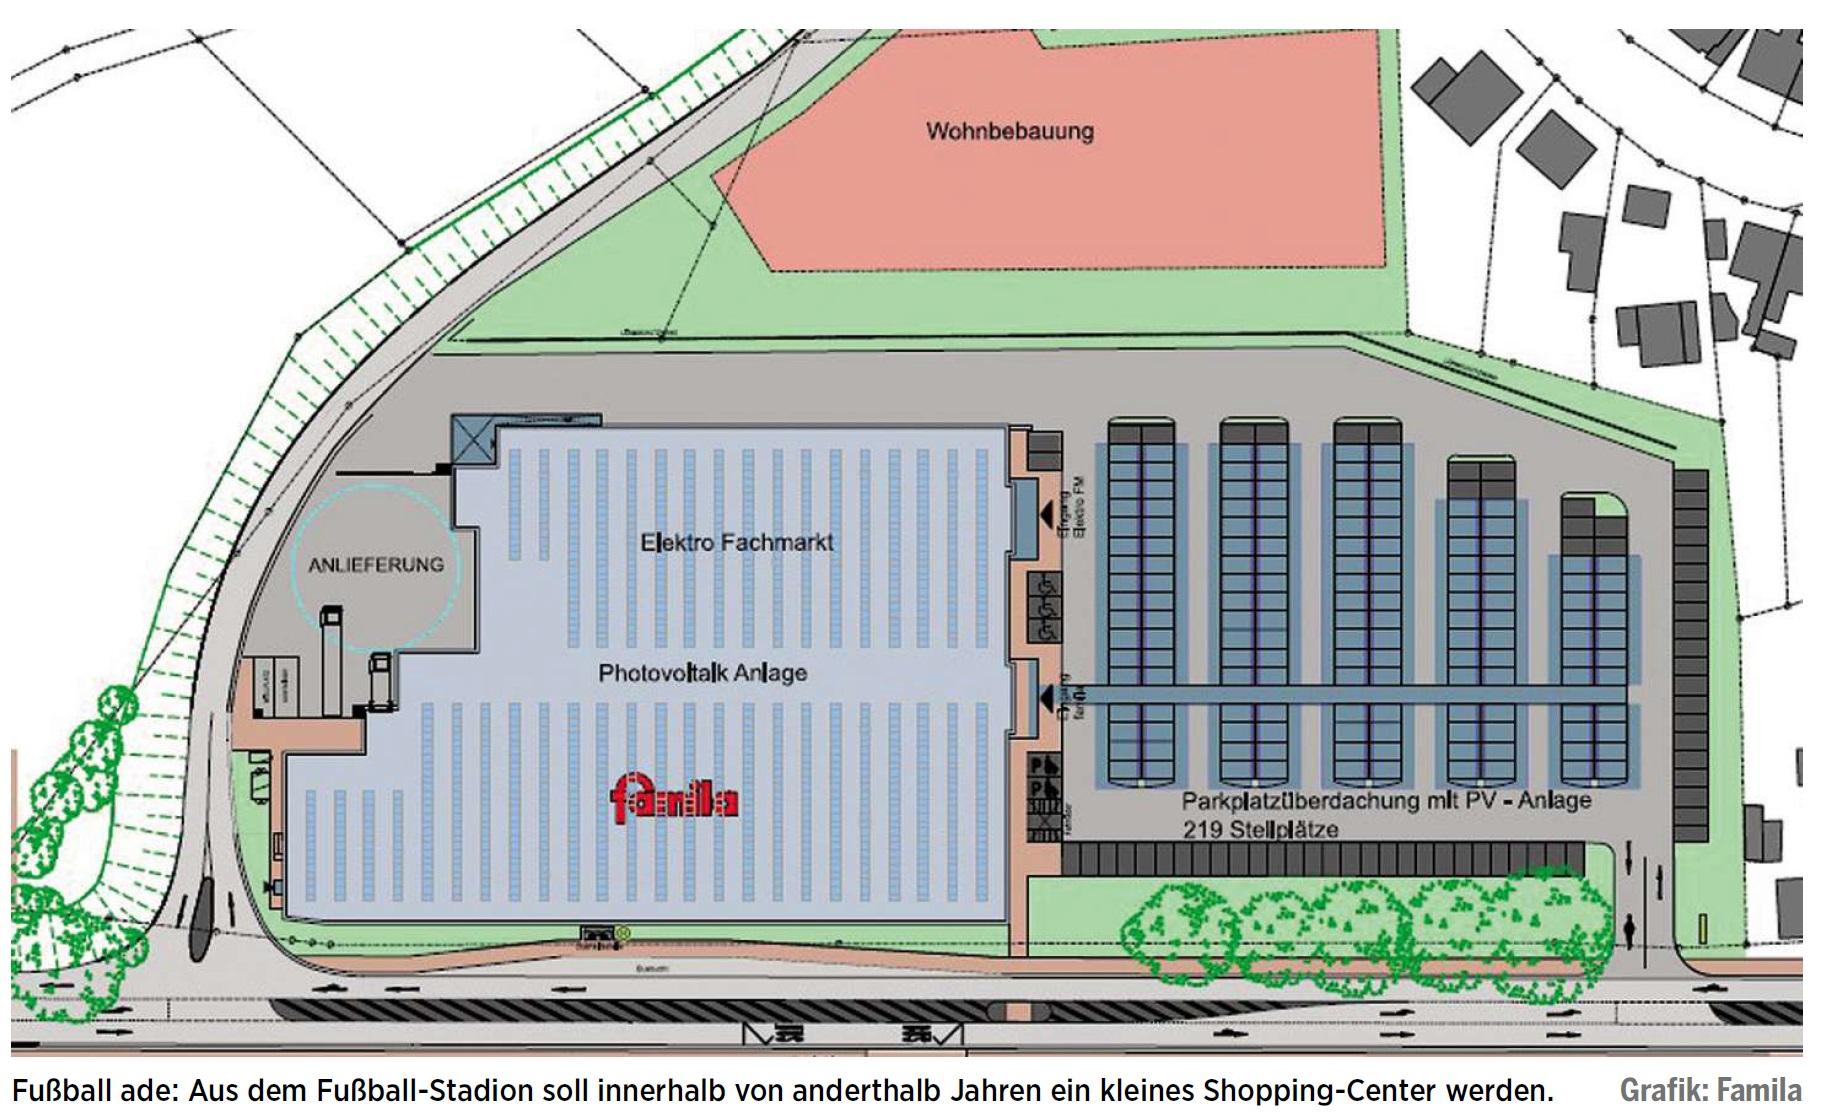 Fussball ade: Aus dem Grünenthal-Stadion soll innerhalb von anderthalb Jahren ein klieins Shopping-Center werden.